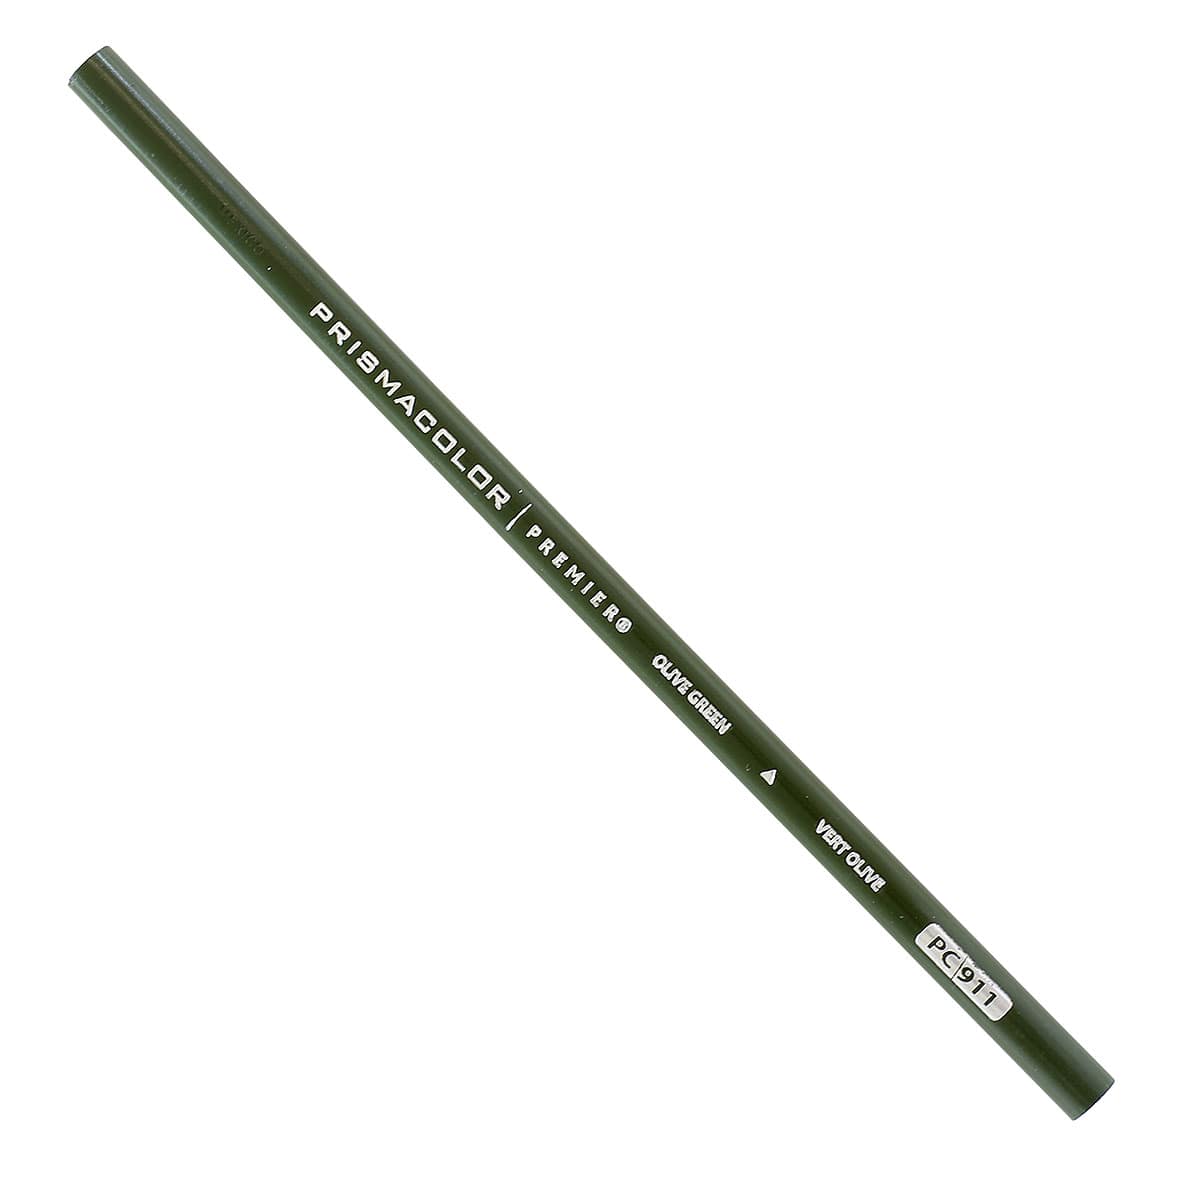 Premier® Soft Core Colored Pencil Singles